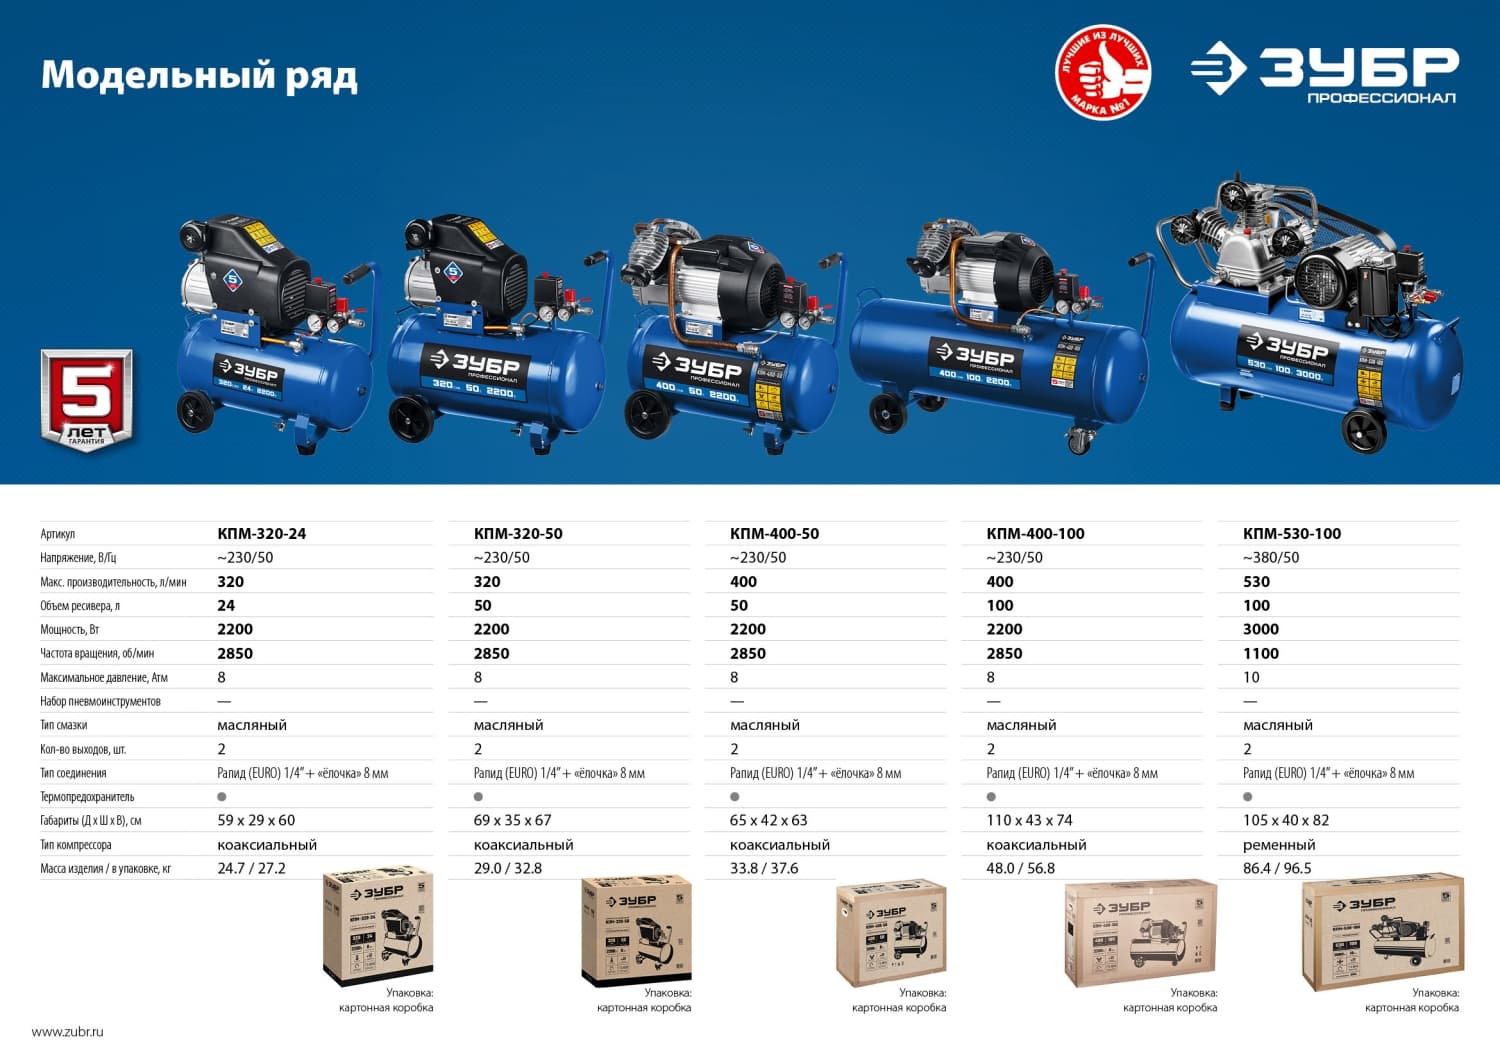 ЗУБР 400 л/мин, 50 л, 2200 Вт, масляный компрессор, Профессионал (КПМ-400-50)